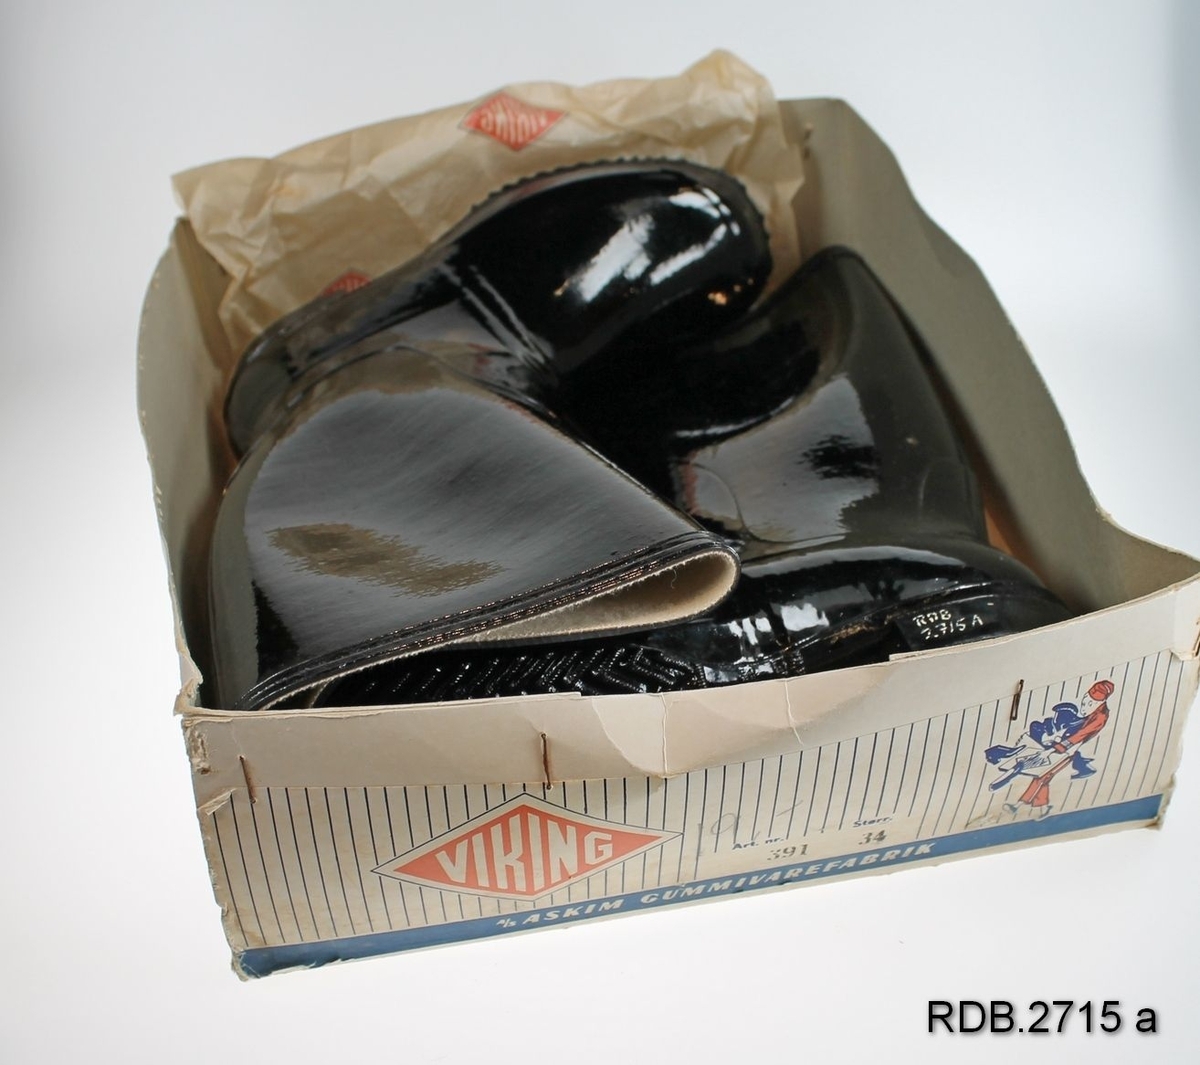 Et par nye, svarte Viking gummistøvler str. 34. Støvlene er fôra med beige stoff. Støvlene er innpakket i papir og ligger i originaleske. Rengjøringsanvisning av gummifottøy ligger i eska.